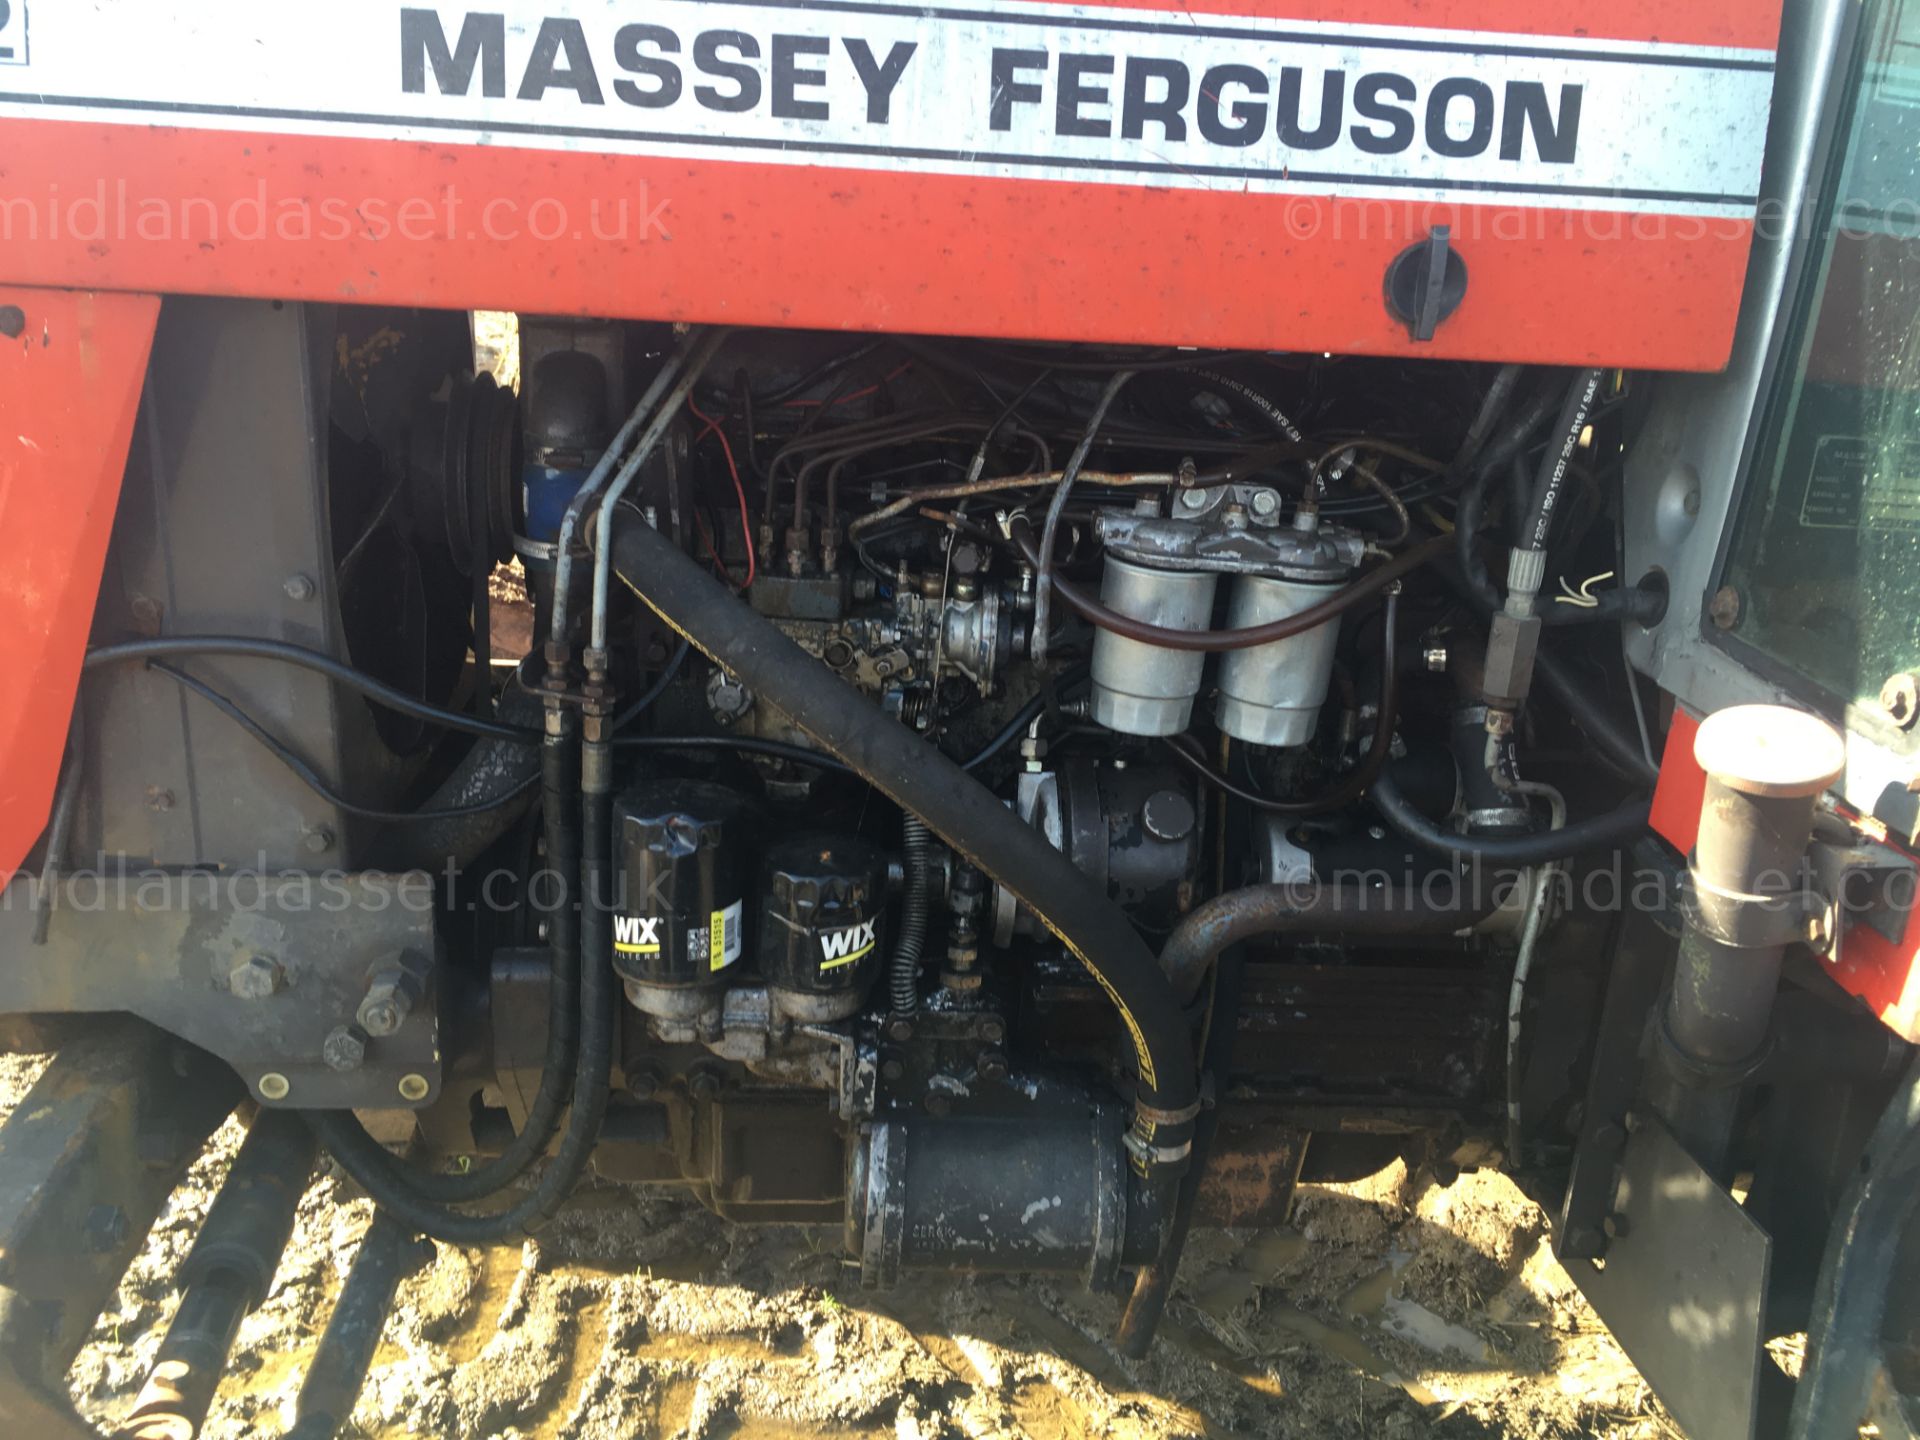 1986 MASSEY FERGUSON 699 WITH RETROFIT TURBO - Image 2 of 4